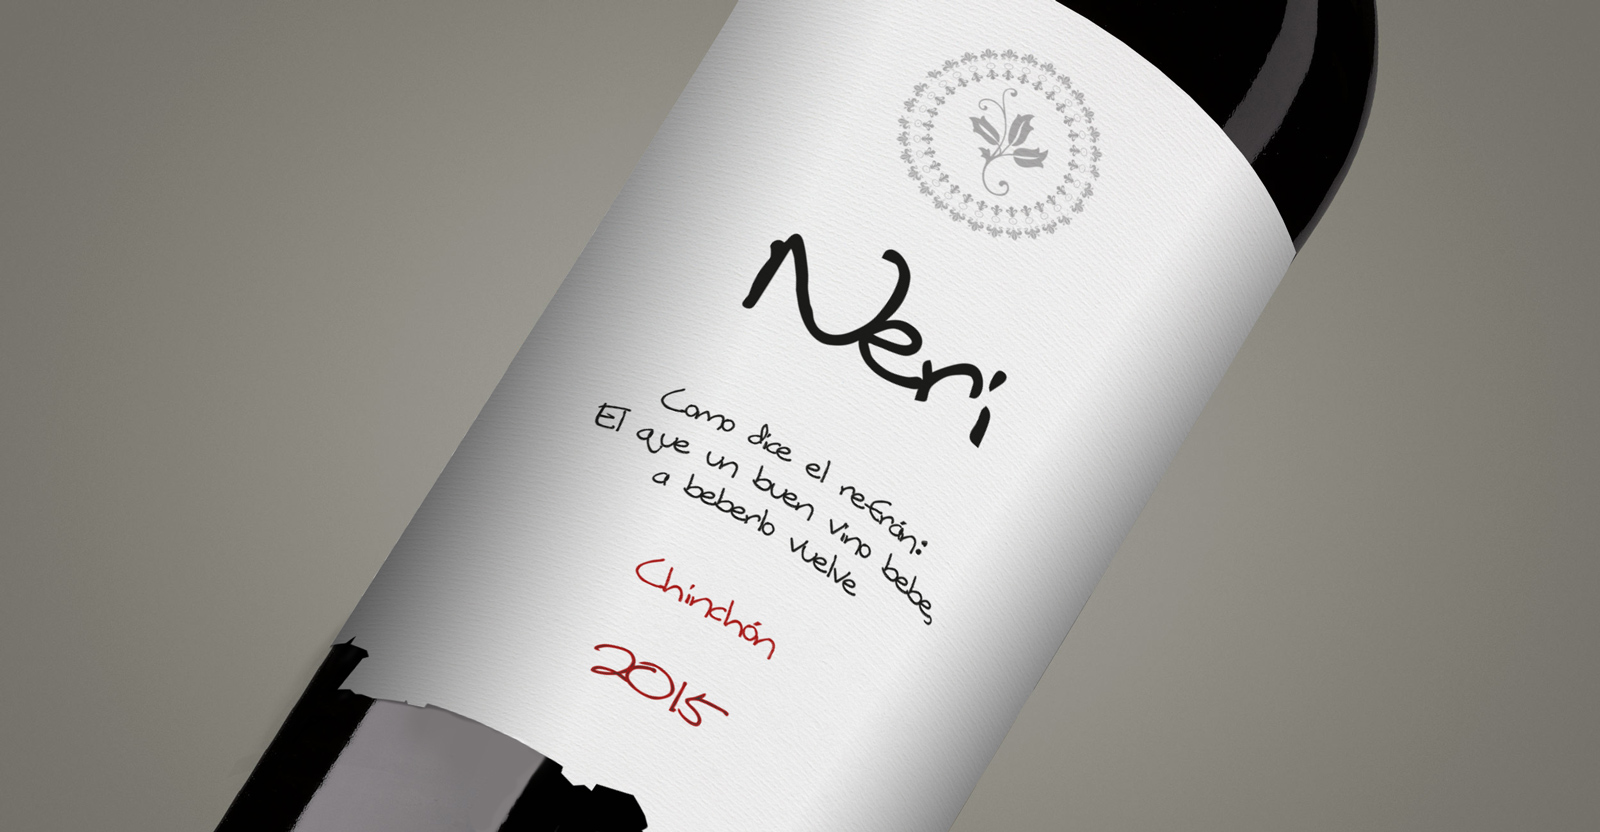 Diseño gráfico y creativo de etiquetas y packaging de vino para NERÍ